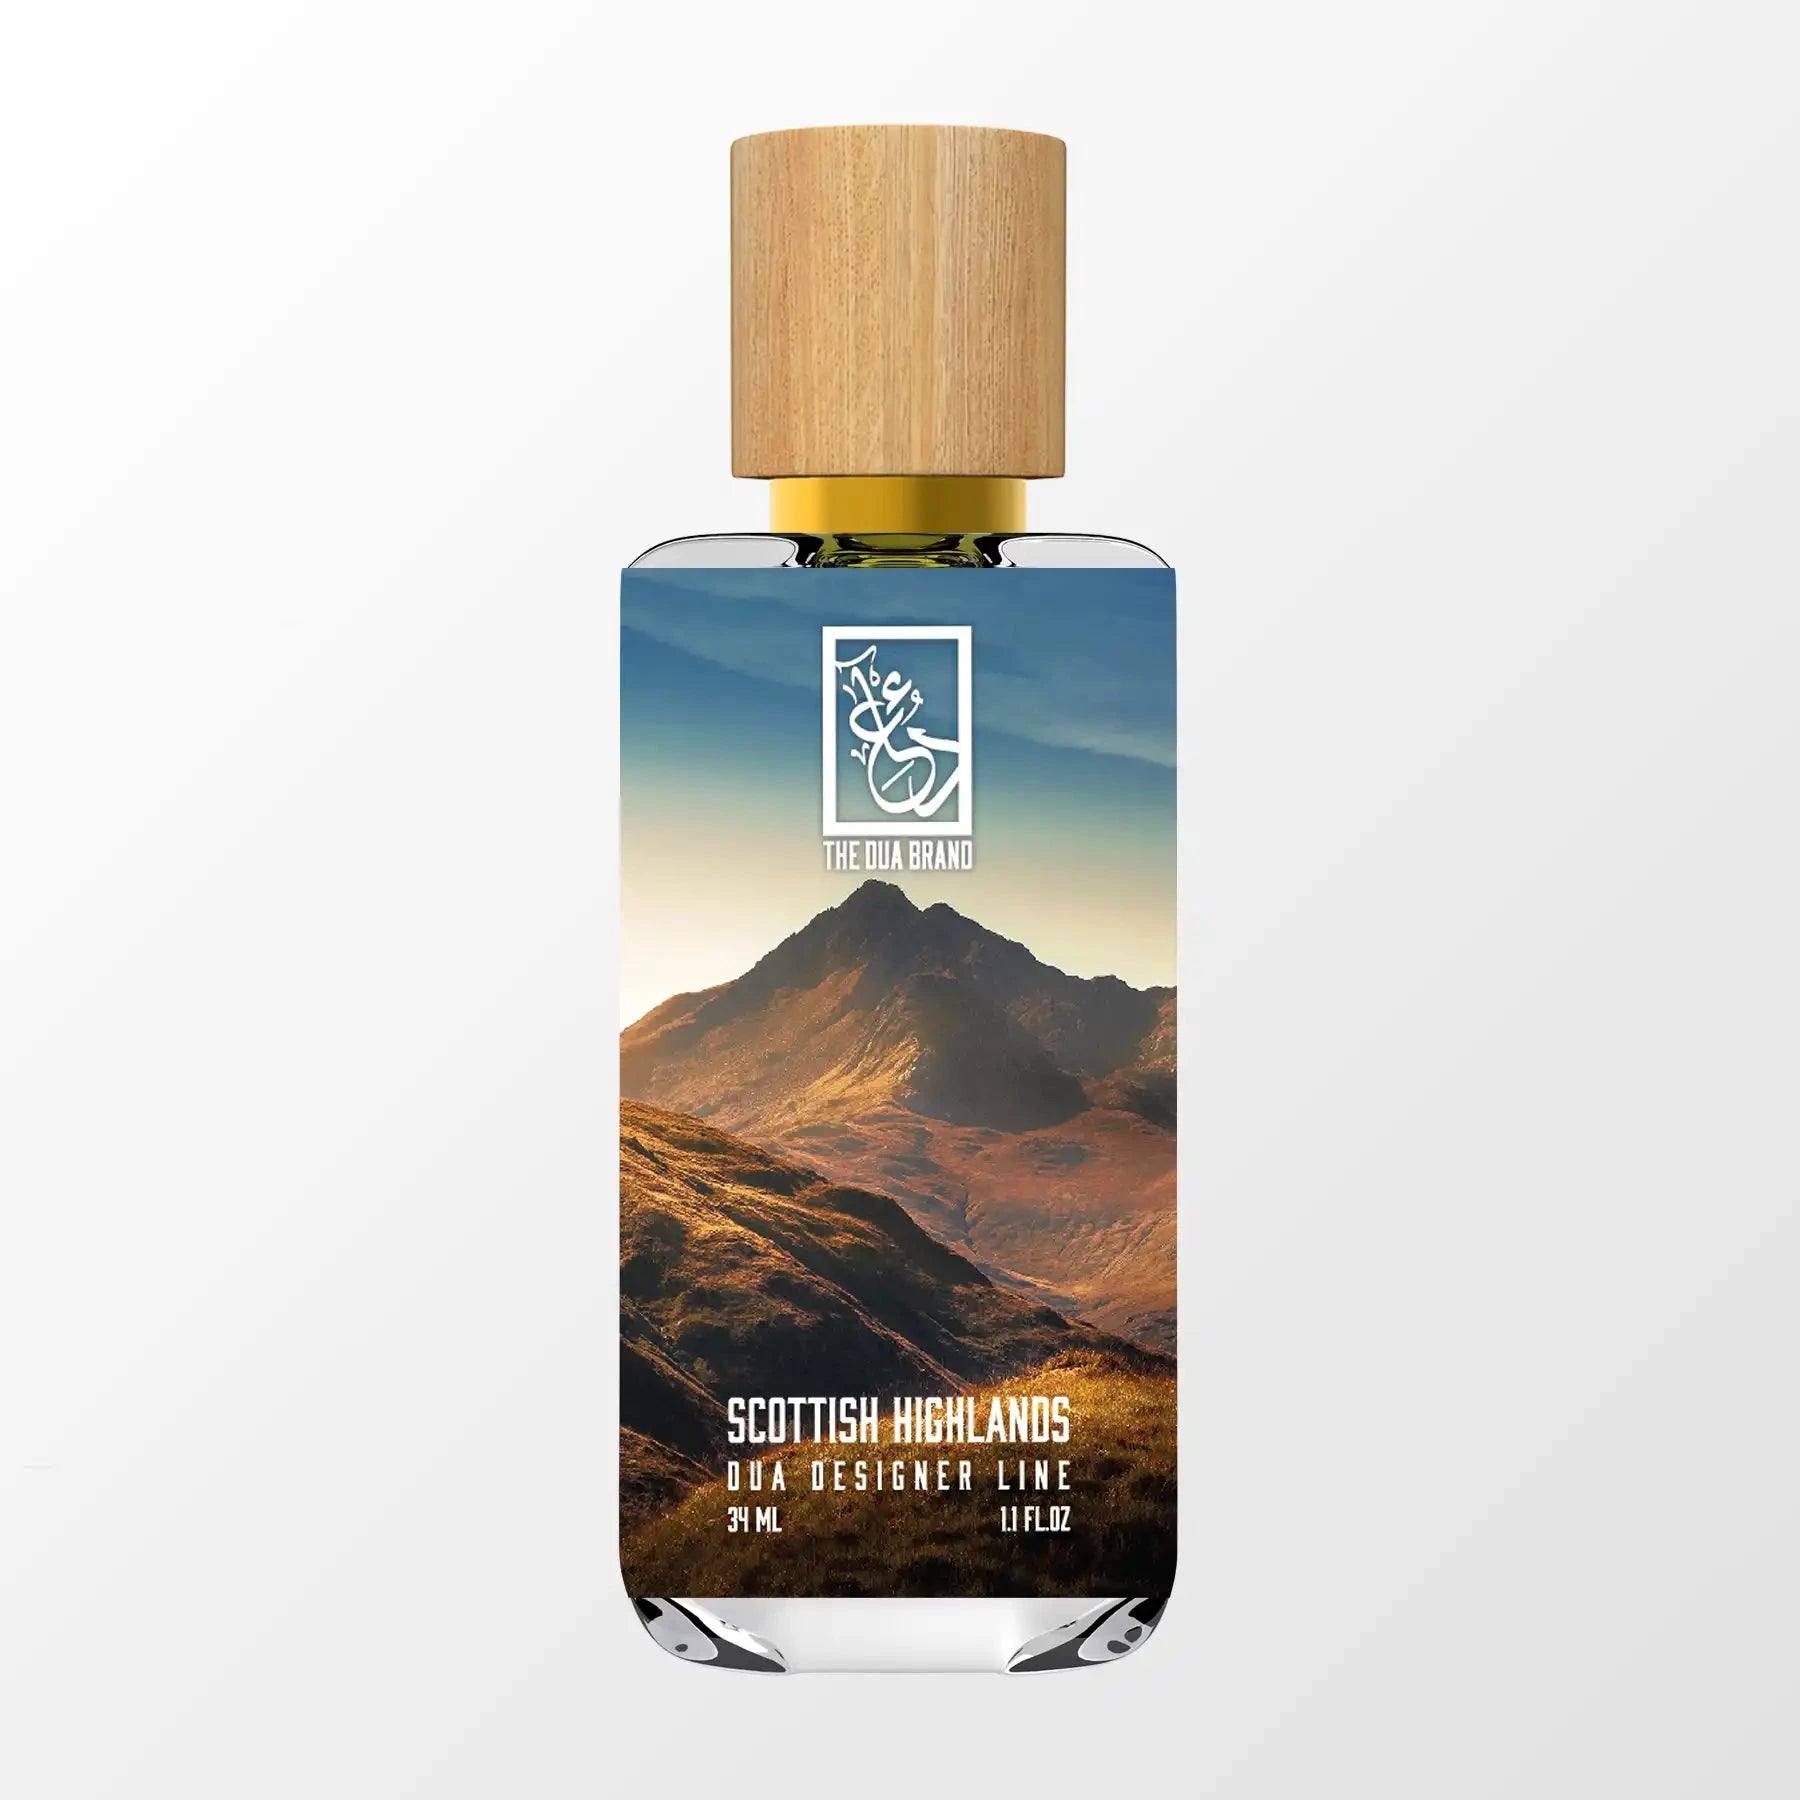 Scottish Highlands - Dua Fragrances - Inspired by Paris – Édimbourg Chanel - Unisex Perfume - 34ml/1.1 fl oz - Extrait de Parfum